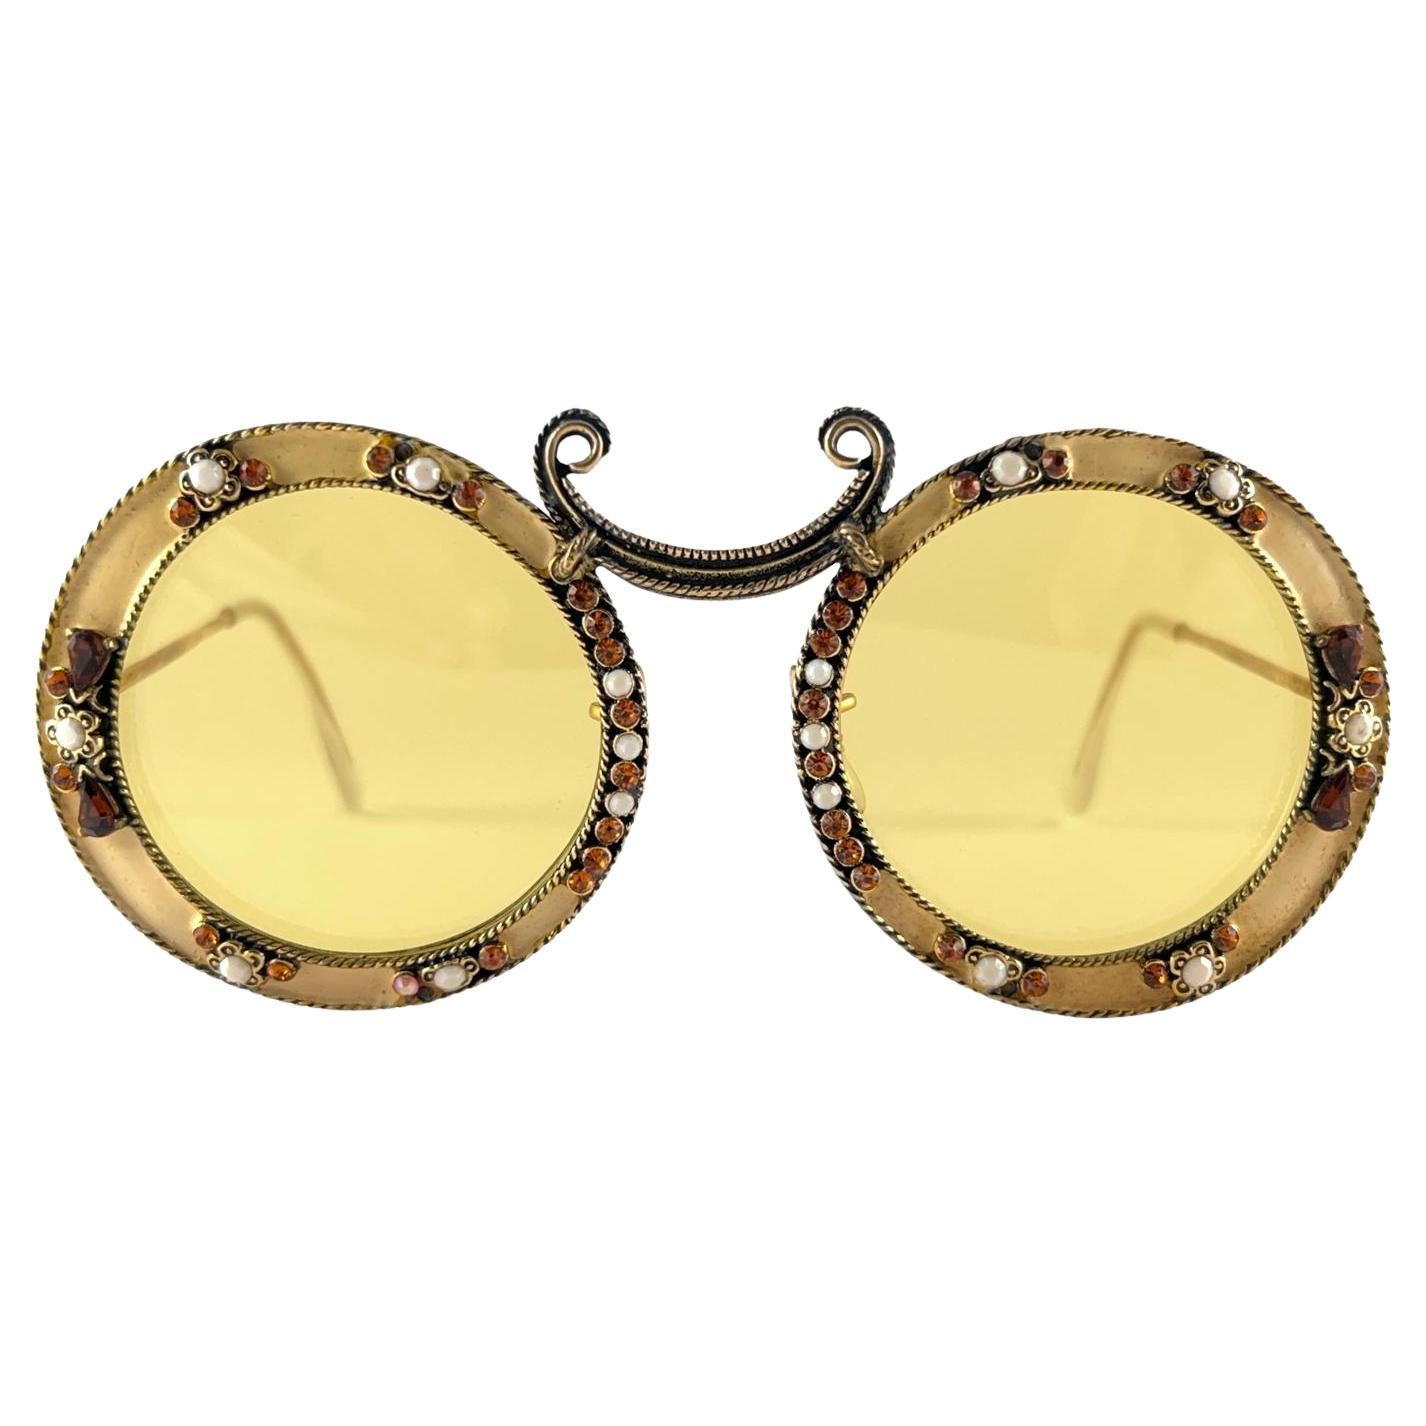 Sehr seltene Sonnenbrille von Christian Dior aus den 1960er Jahren von Tura.  

Dies ist ein seltenes Stück, nicht nur wegen seines ästhetischen Wertes, sondern auch wegen seiner Bedeutung in der Geschichte der Sonnenbrillen und der Mode.   
Zarte,